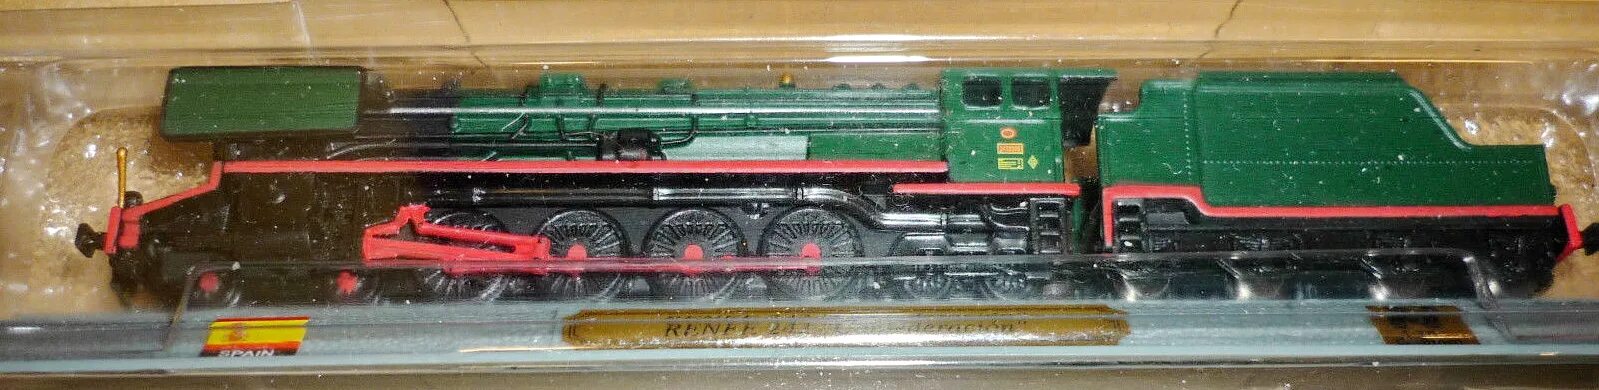 160 1 22. Масштабные модели локомотивов фирмы дель Прадо 1:160. : Del Prado locomotives of the World. Железнодорожный моделизм n 1:160. Модель авто 1:120 ТТ.